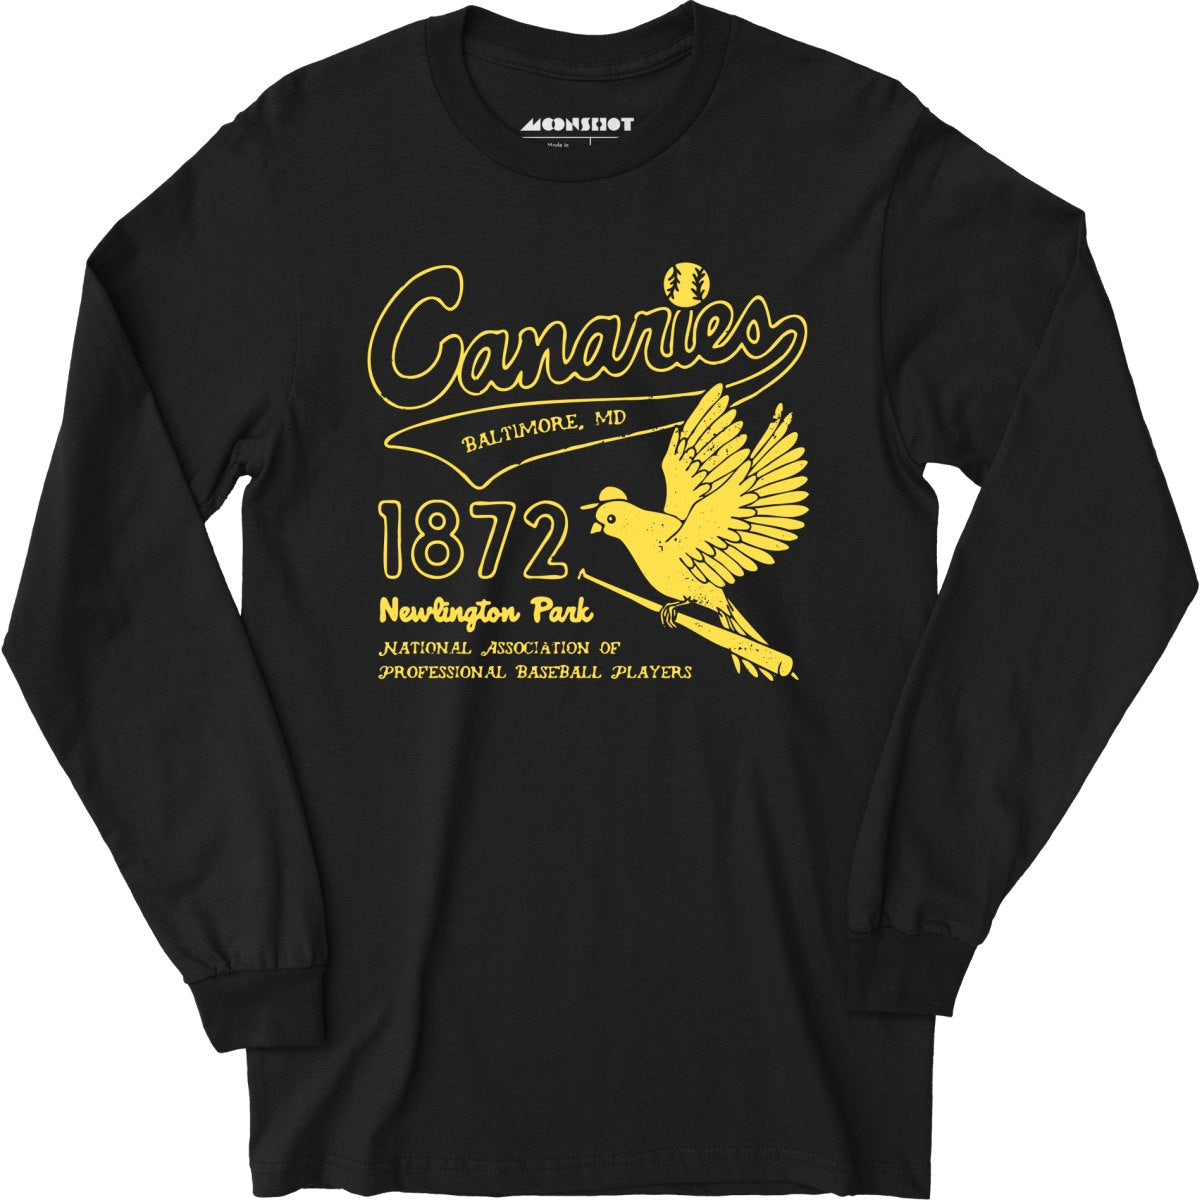 Baltimore Canaries - Maryland - Vintage Defunct Baseball Teams - Long Sleeve T-Shirt